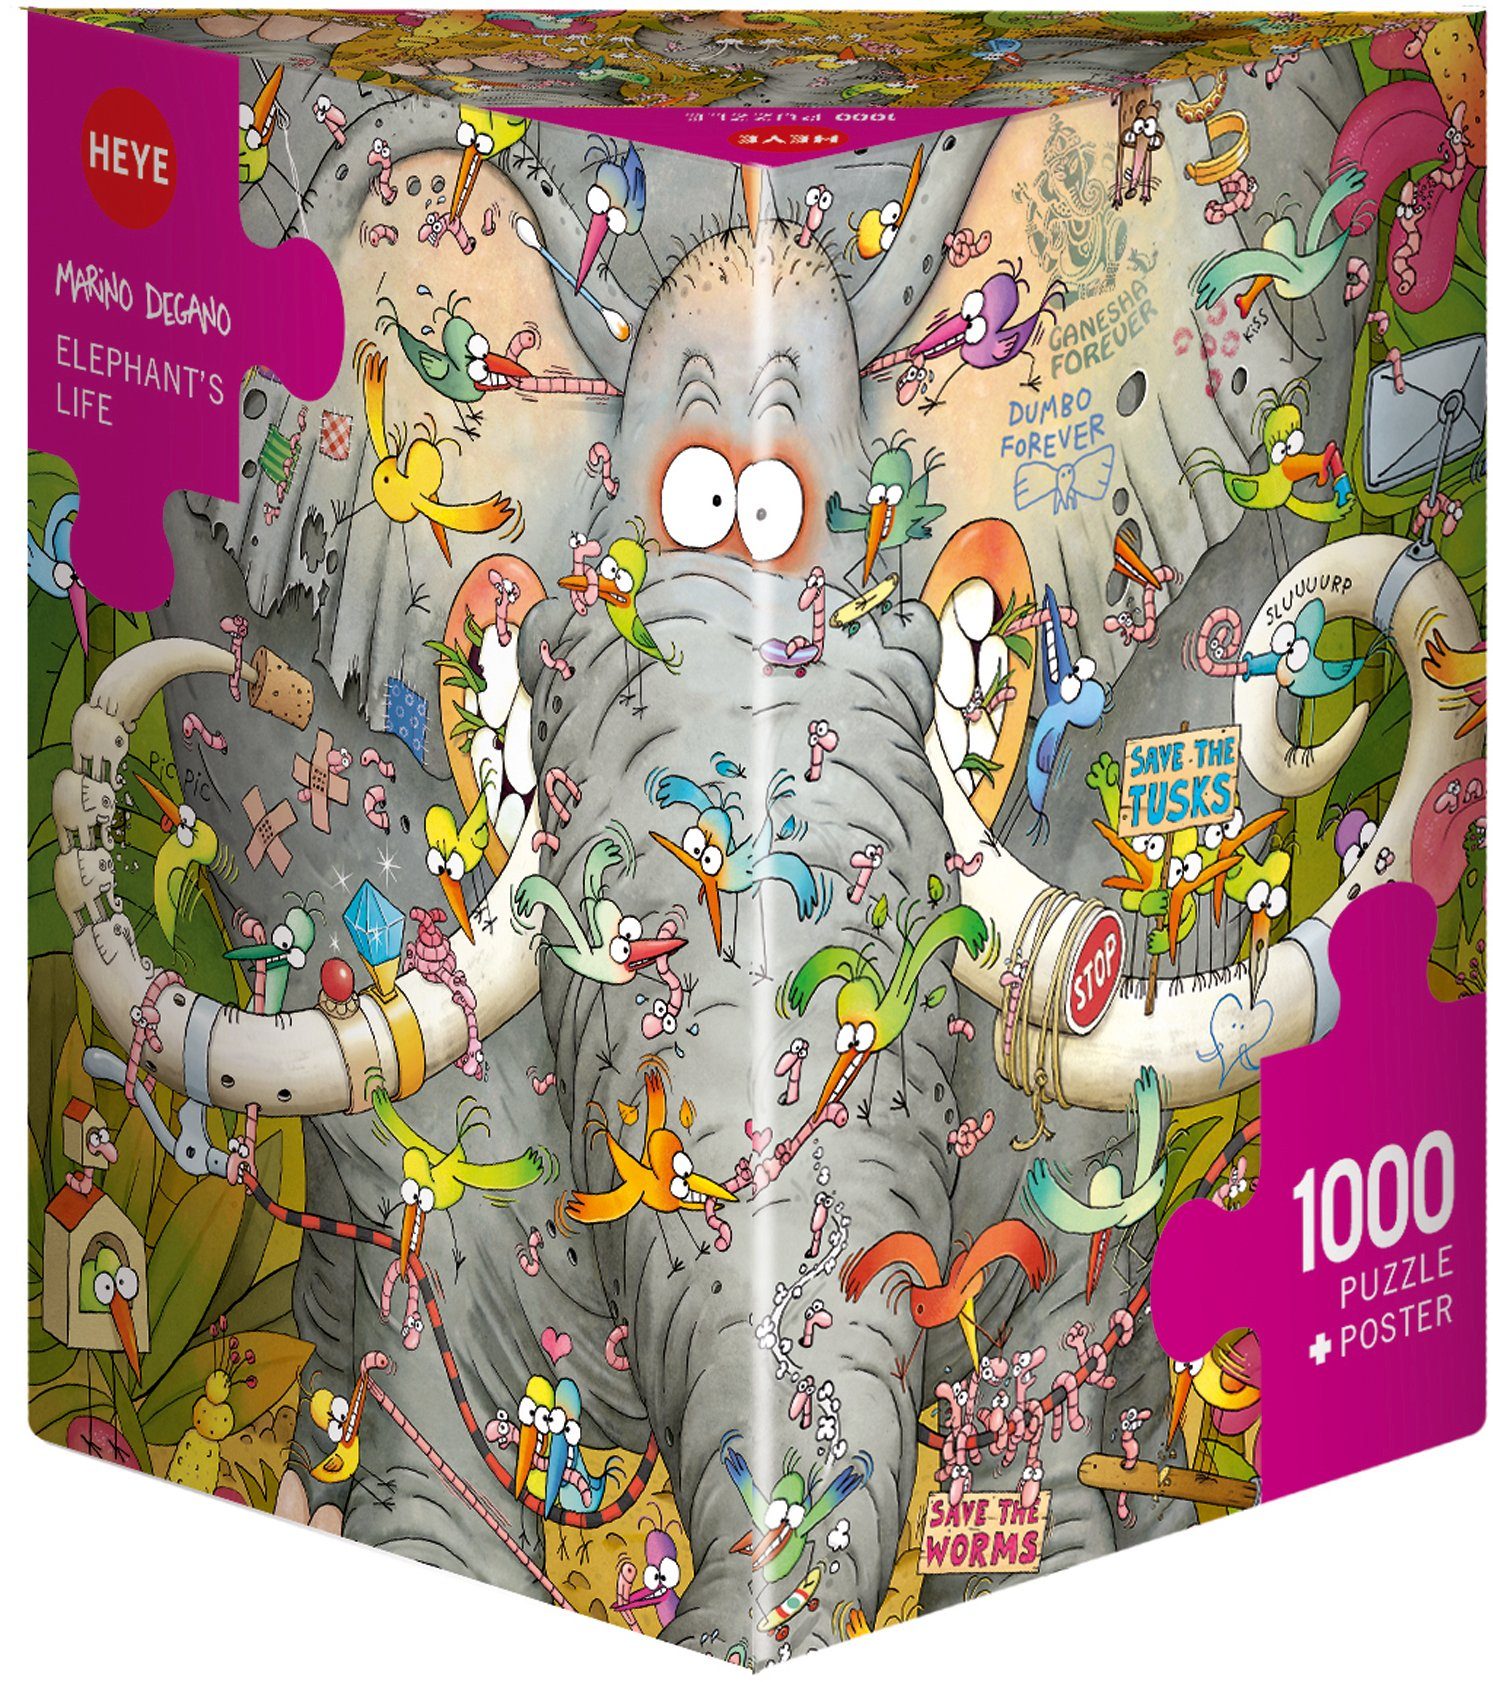 HEYE Puzzle Elephant's Life, Degano, 1000 Puzzleteile, Made in Europe